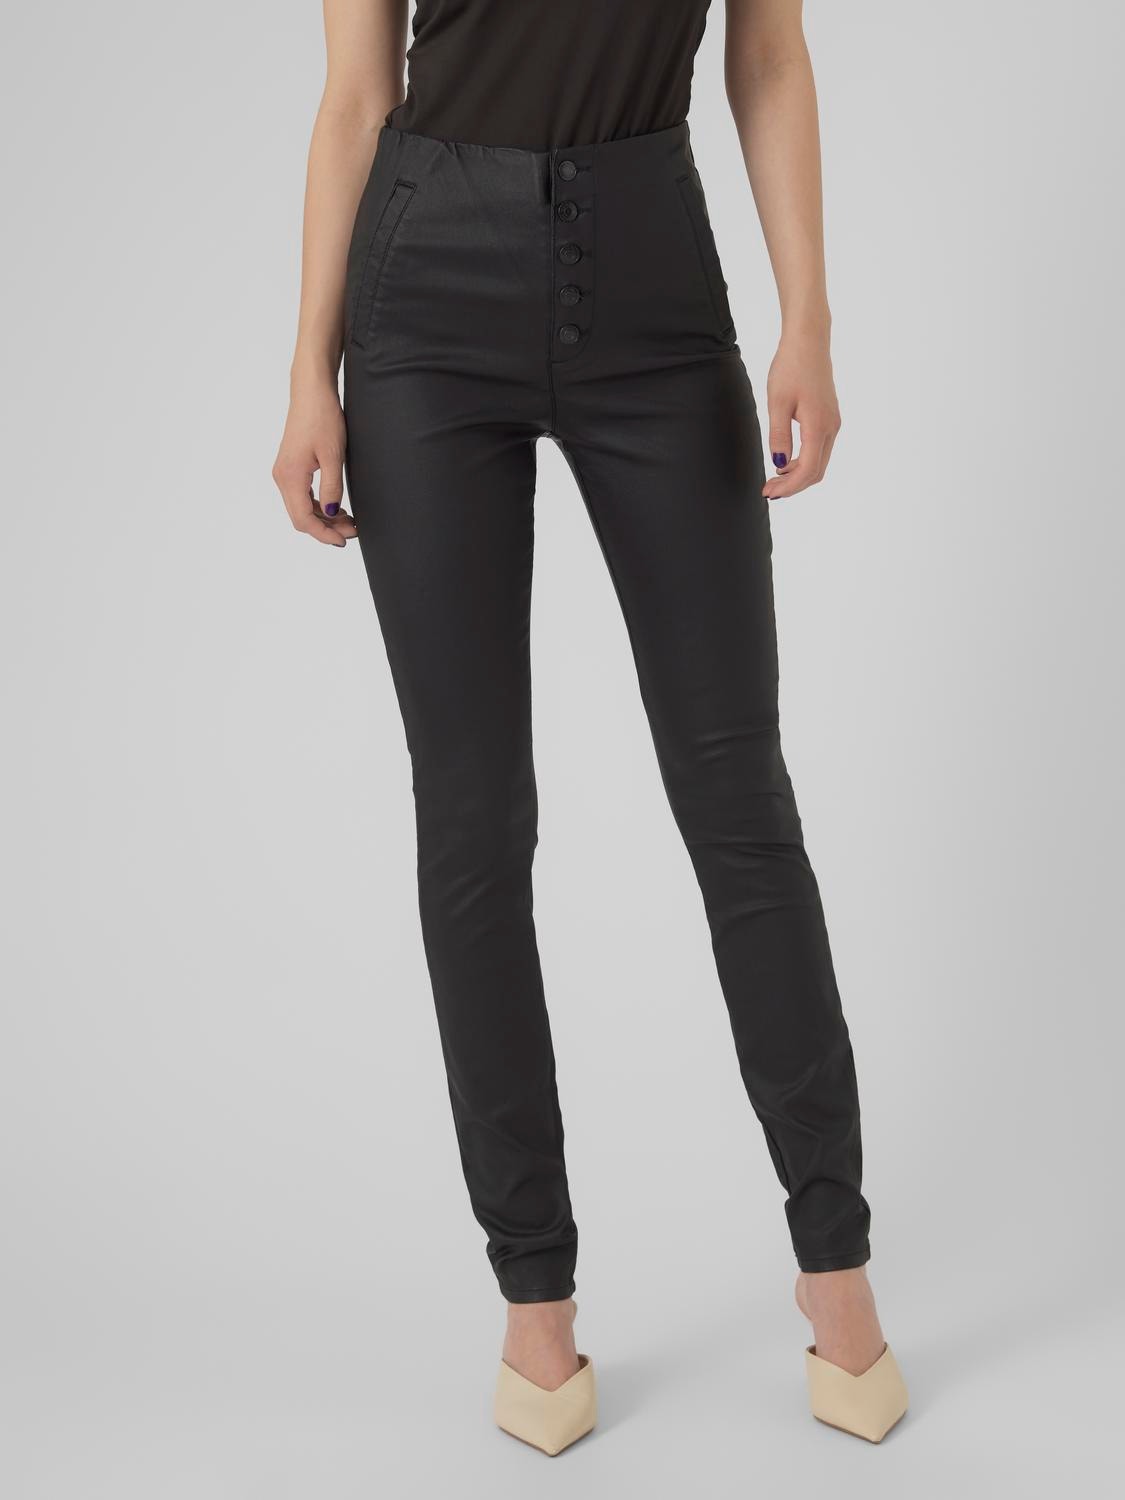 Vero Moda VMSANDY Skinny Fit Jeans -Black - 10280544